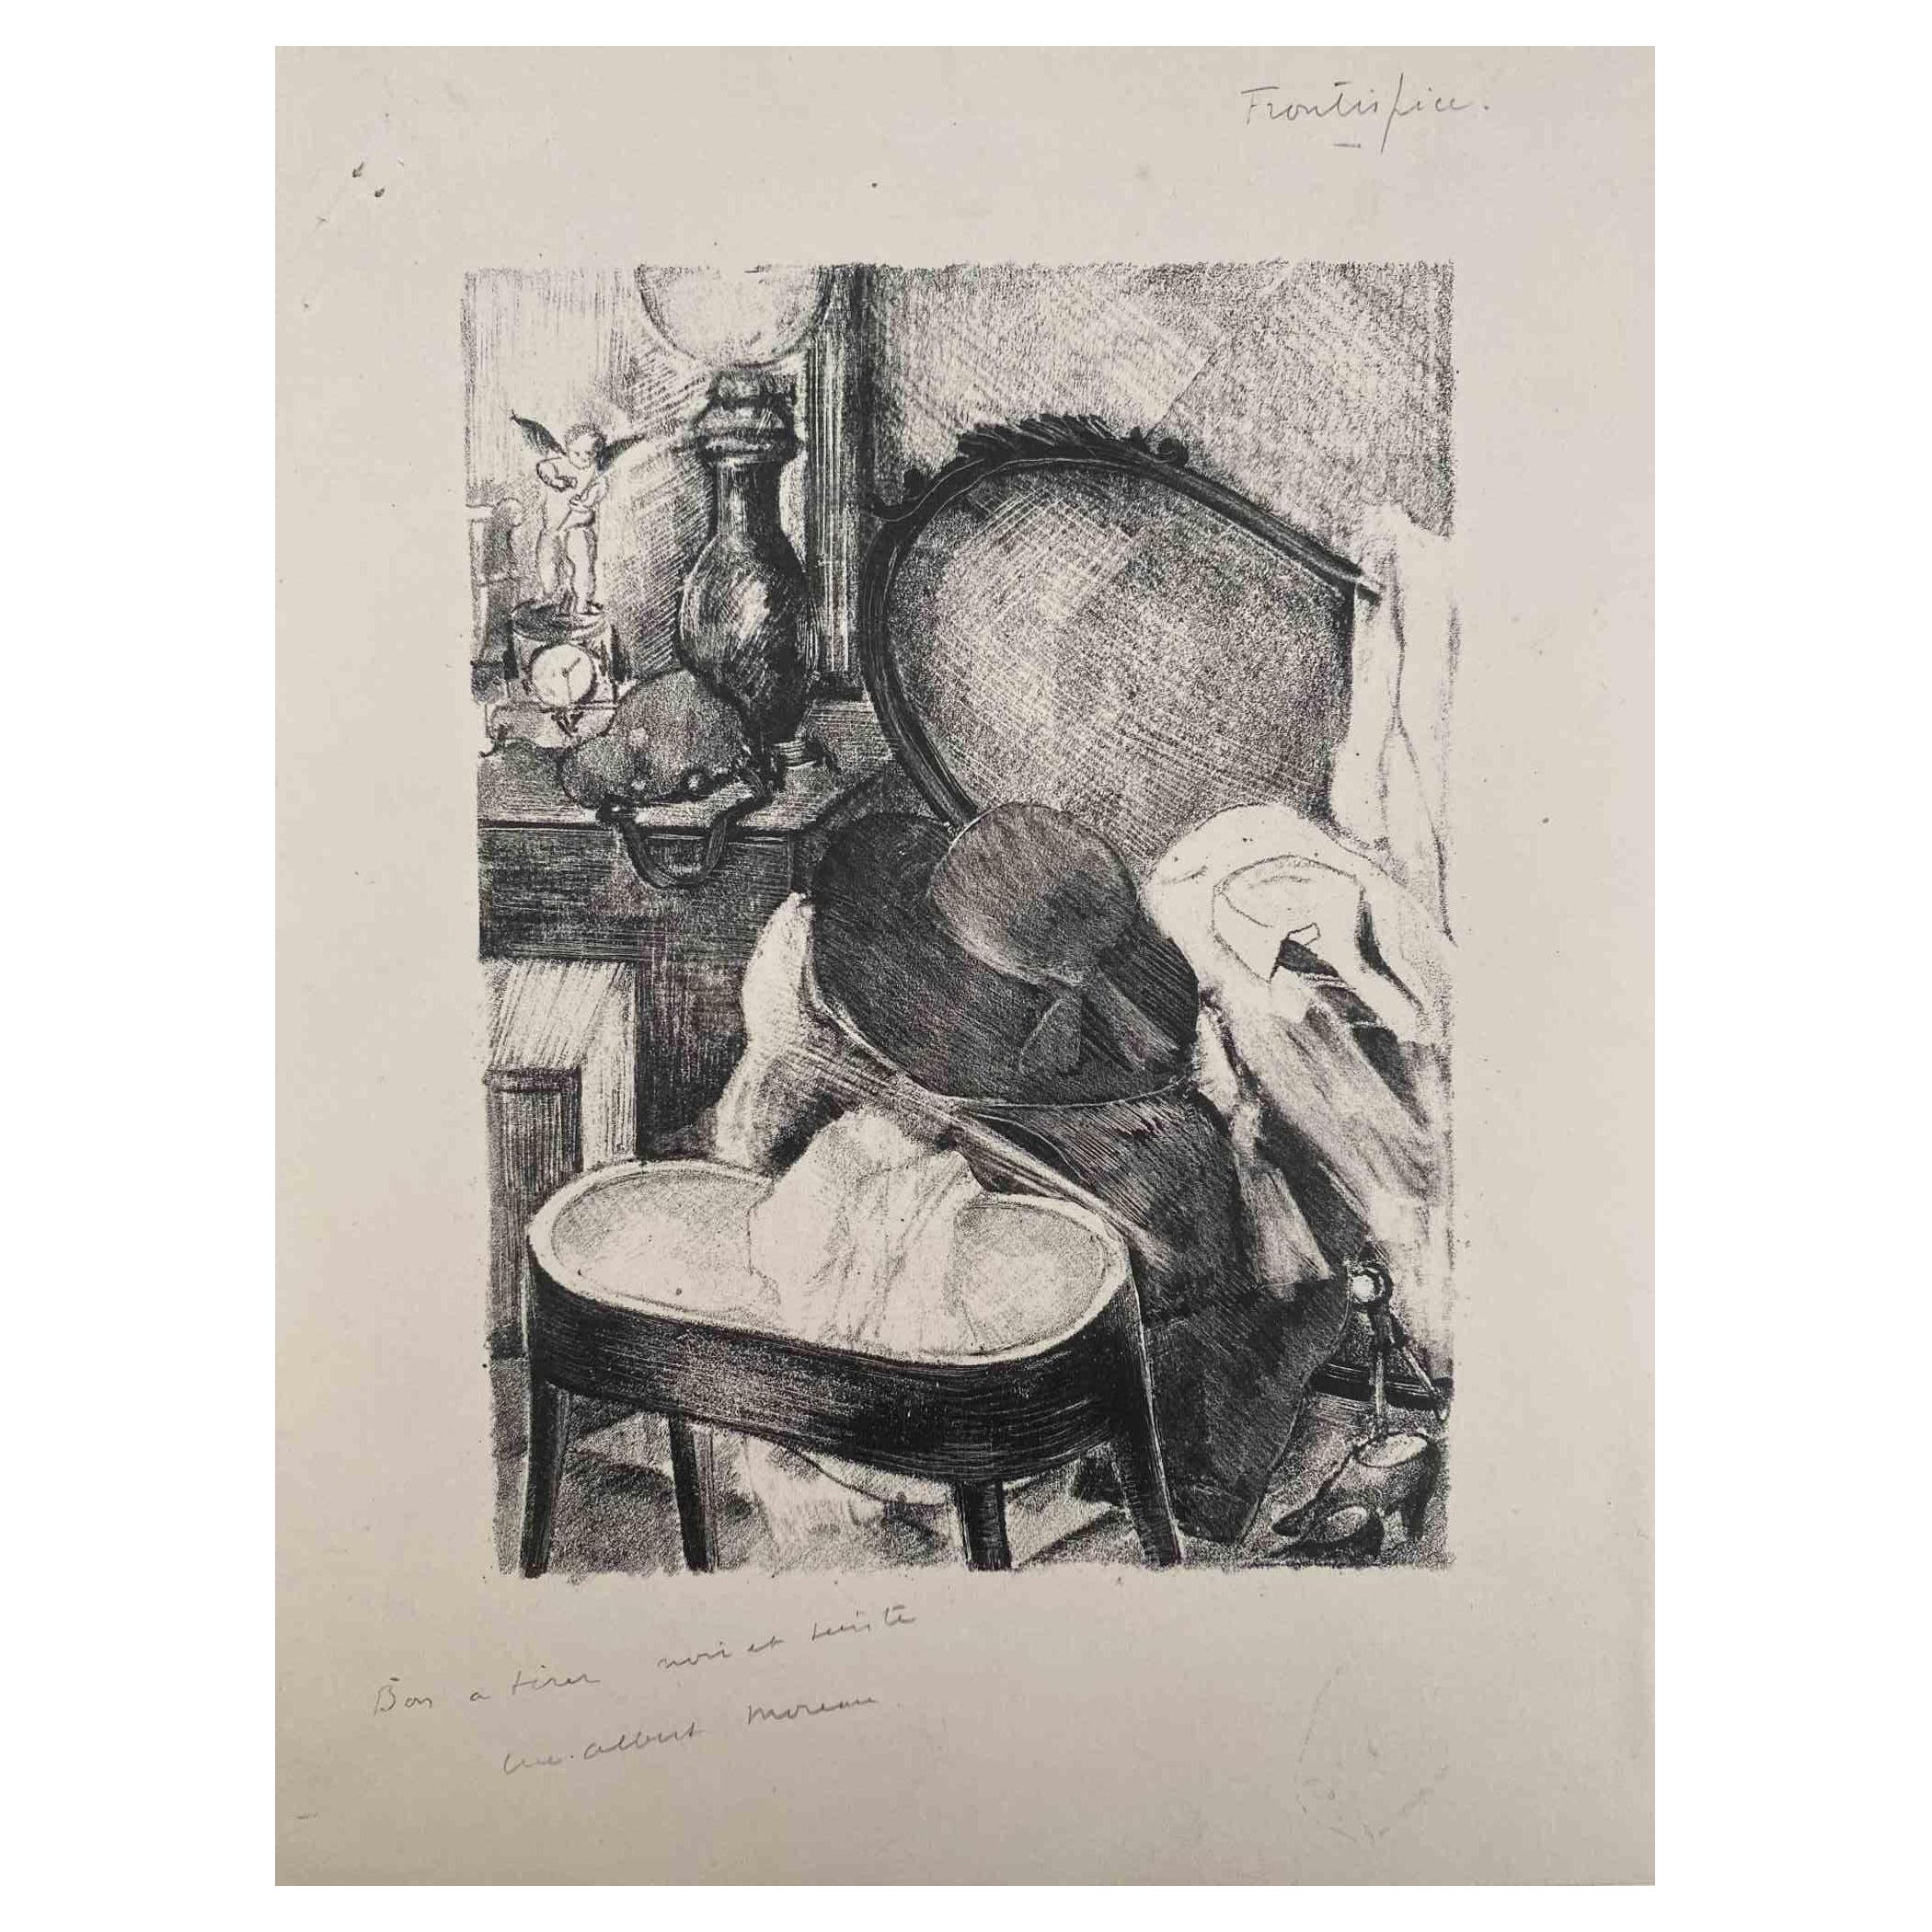 Stillleben ist eine Original-Lithographie auf elfenbeinfarbenem Papier von Luc Albert Moreau.

Das Kunstwerk ist in gutem Zustand.

Handsigniert auf der Unterseite.

Luc-Albert Moreau (1882-1948) ist ein französischer Maler, Graveur, Lithograf und